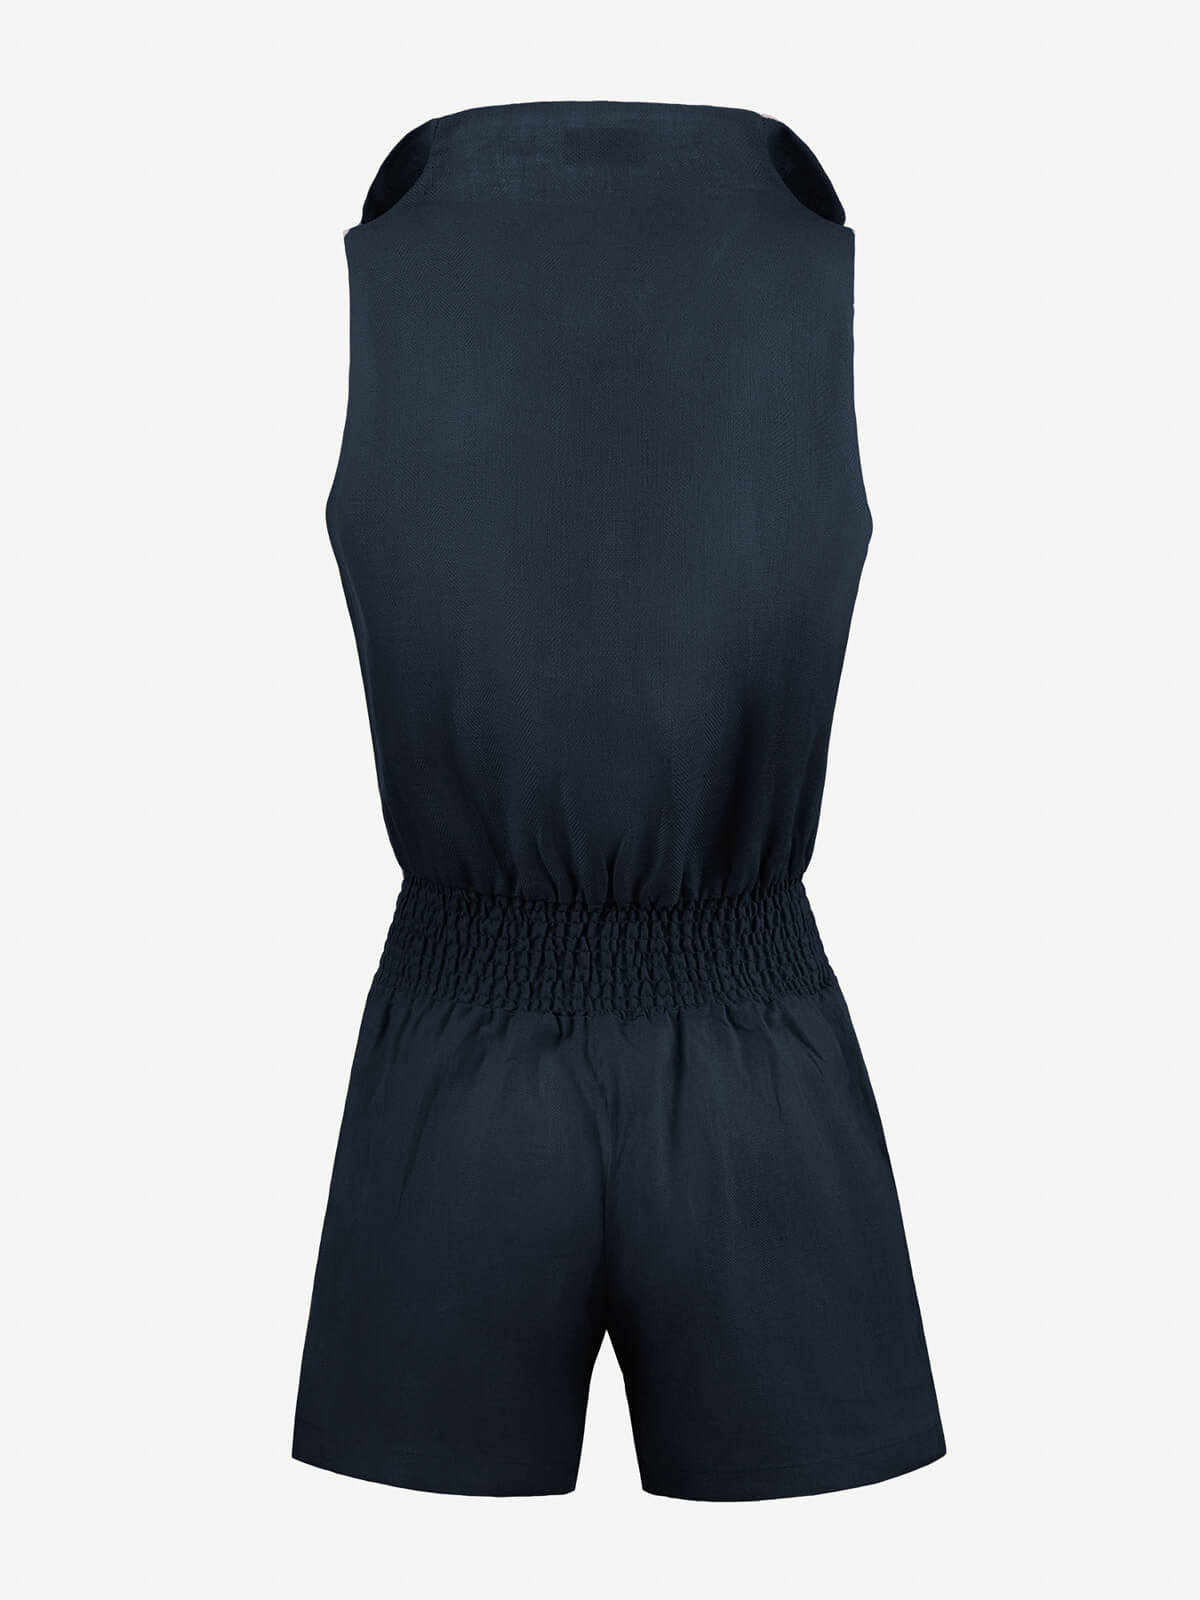 Tuta Zip for woman  100% Capri blue linen jumpsuit back